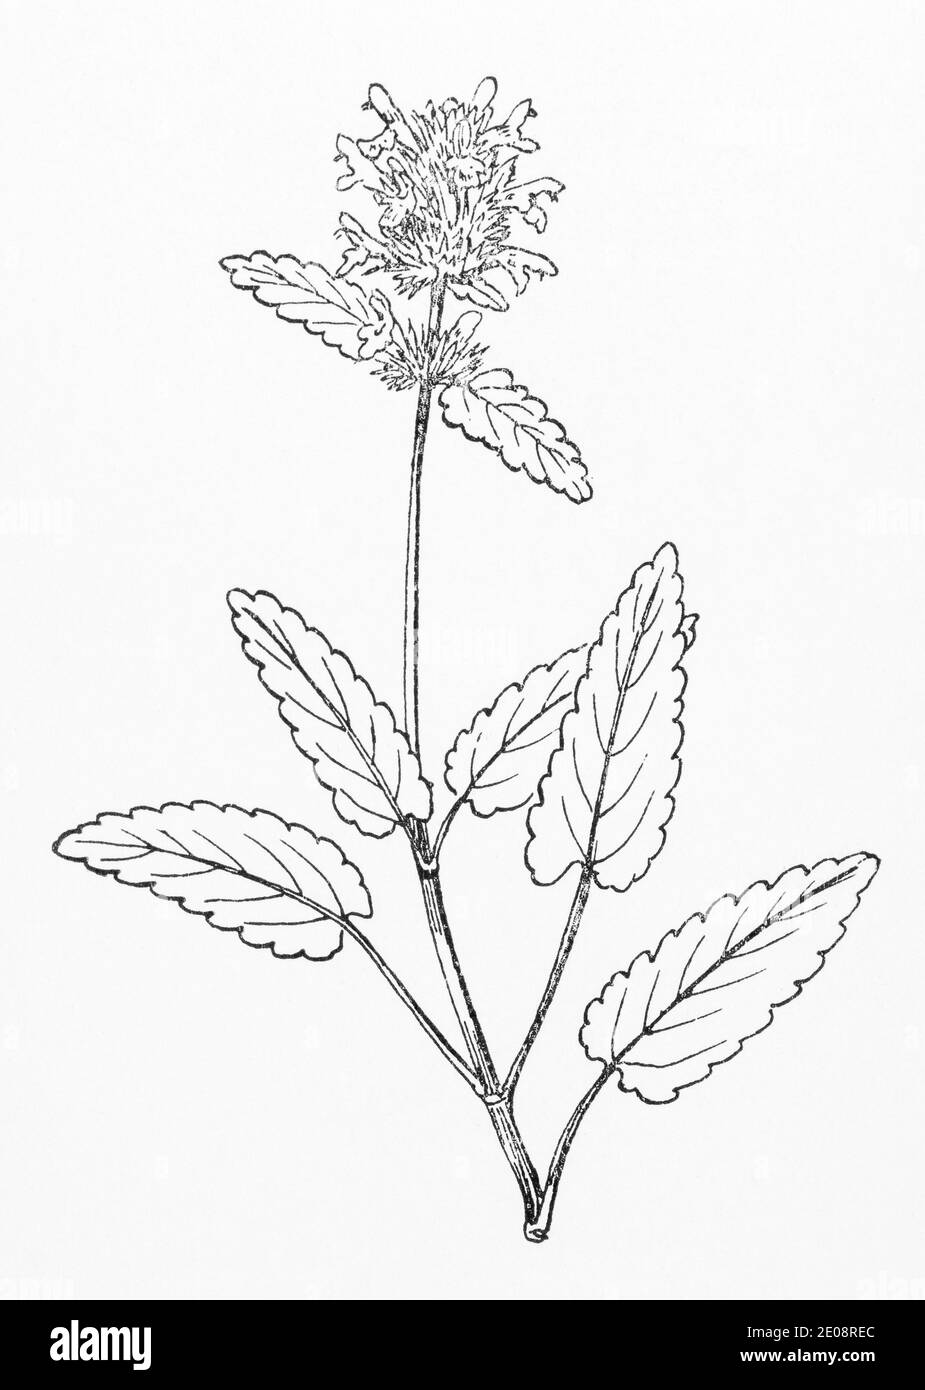 Ancienne gravure d'illustration botanique de bois Betony / Betonica officinalis, Stachys officinalis. Plante médicinale traditionnelle. Voir Remarques. Banque D'Images